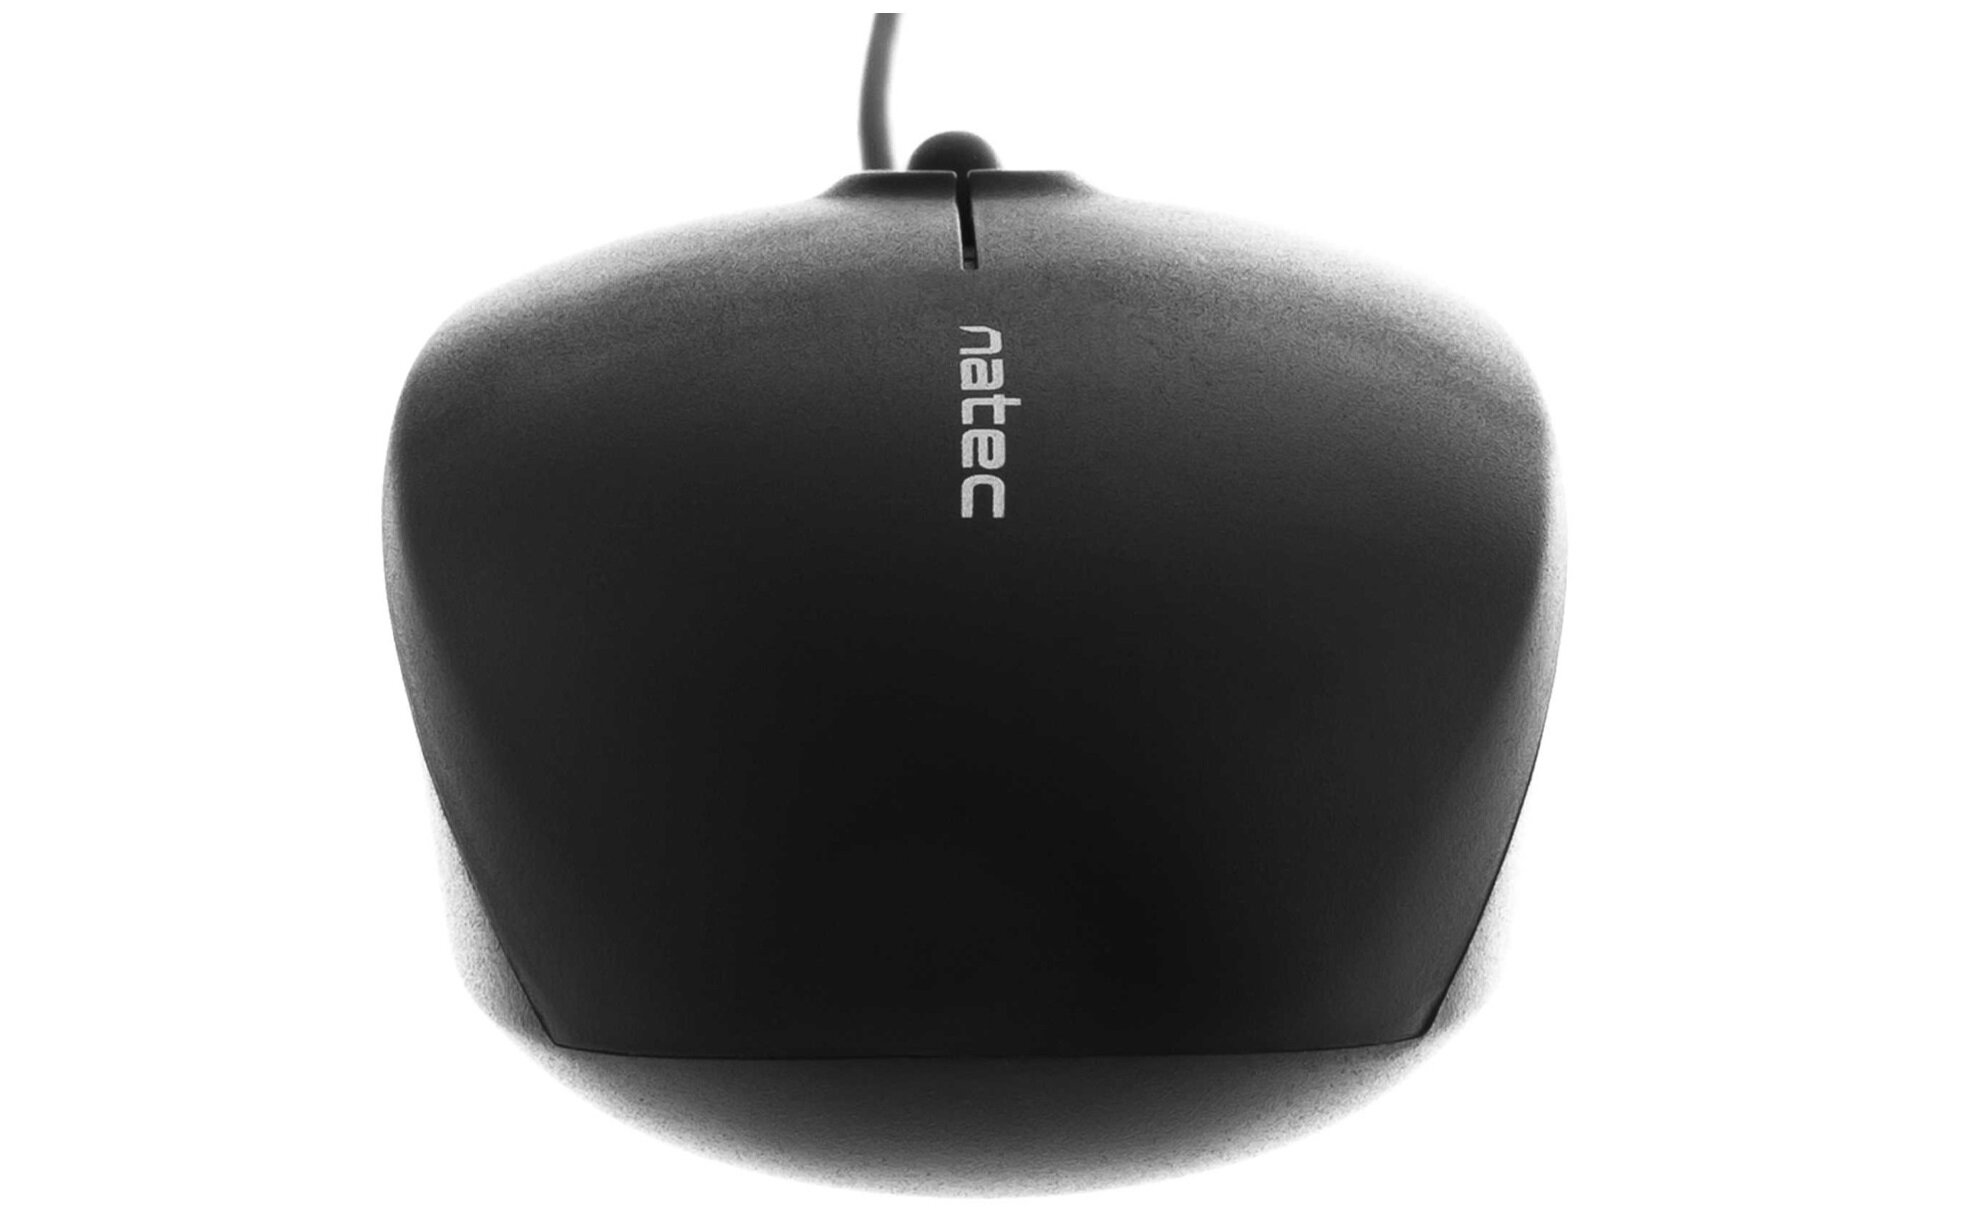 Mysz NATEC Magpie - wygodna rolka przewijania komfort użytkowania ergonomia pracy